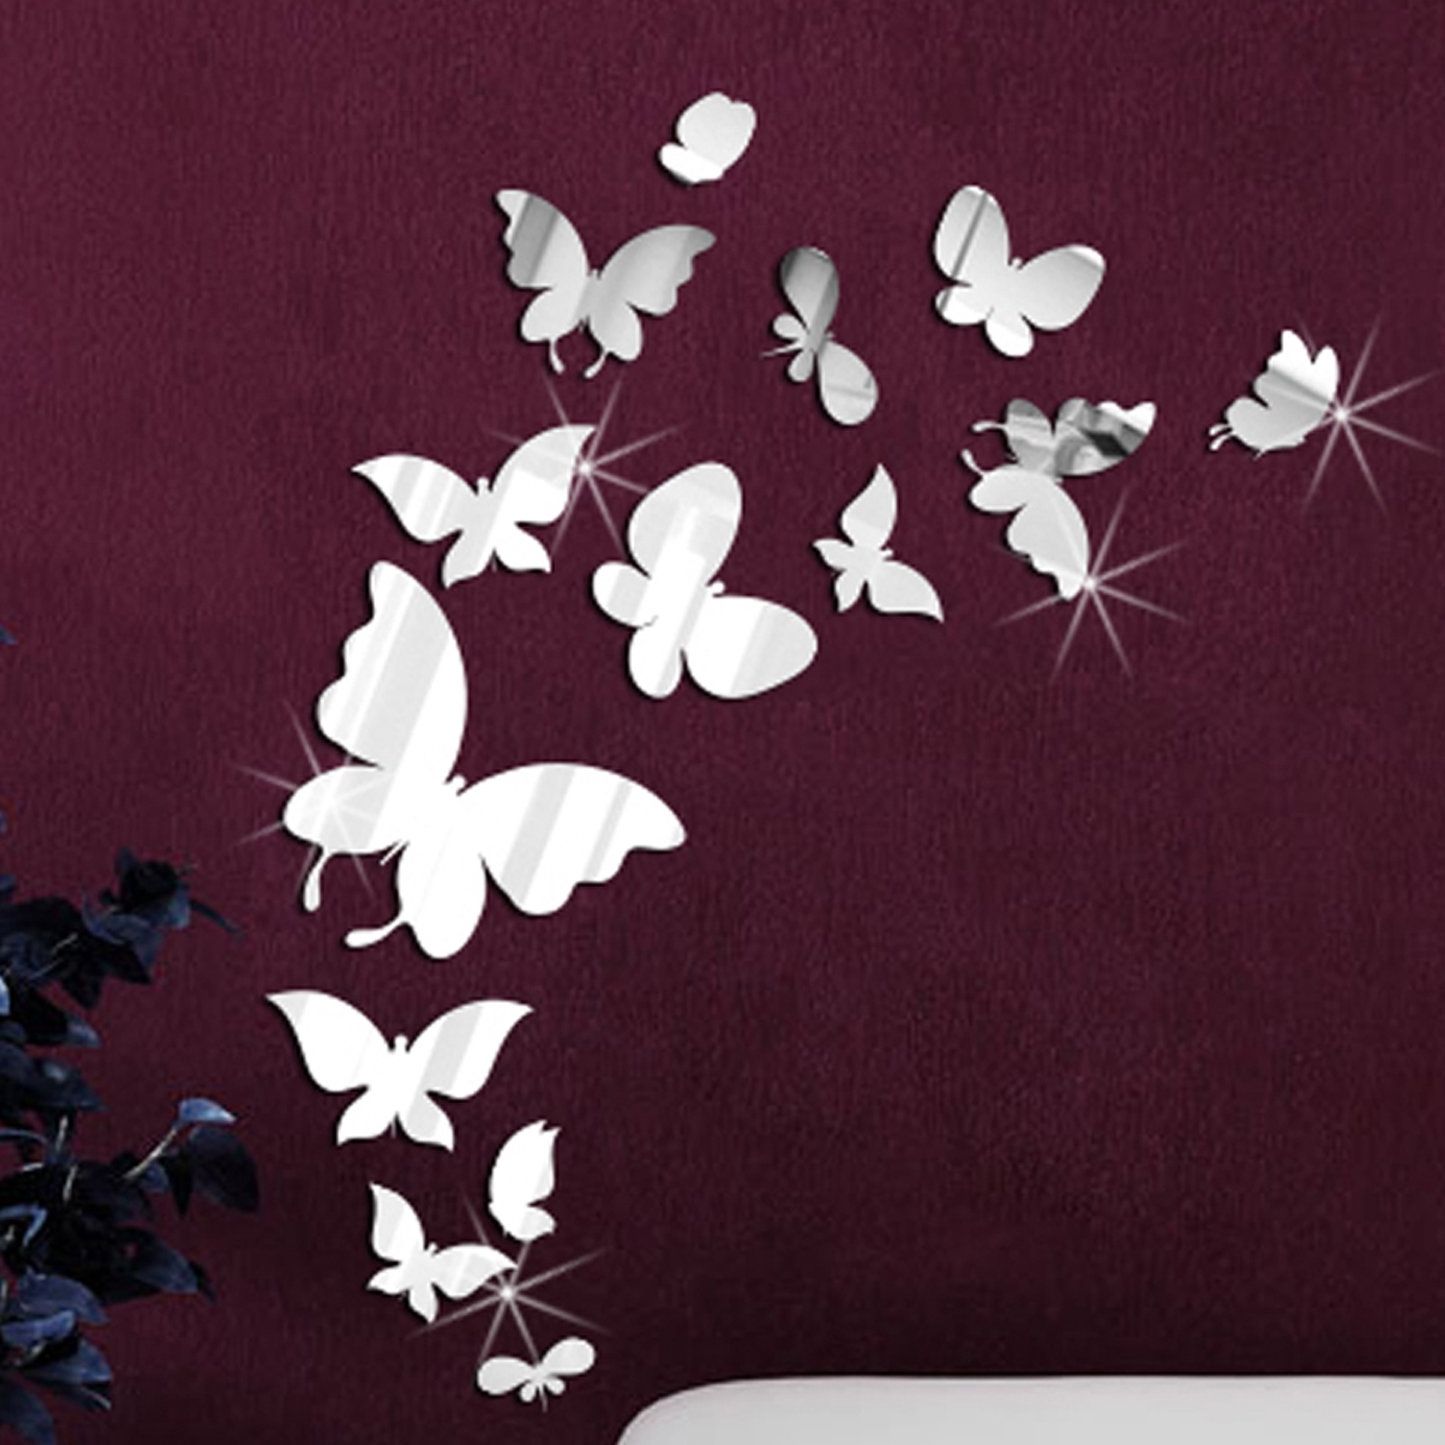 Walplus 14 Mirror Butterflies Wall Art Wall Decal & Reviews | Wayfair For Butterfly Wall Art (Photo 1 of 20)